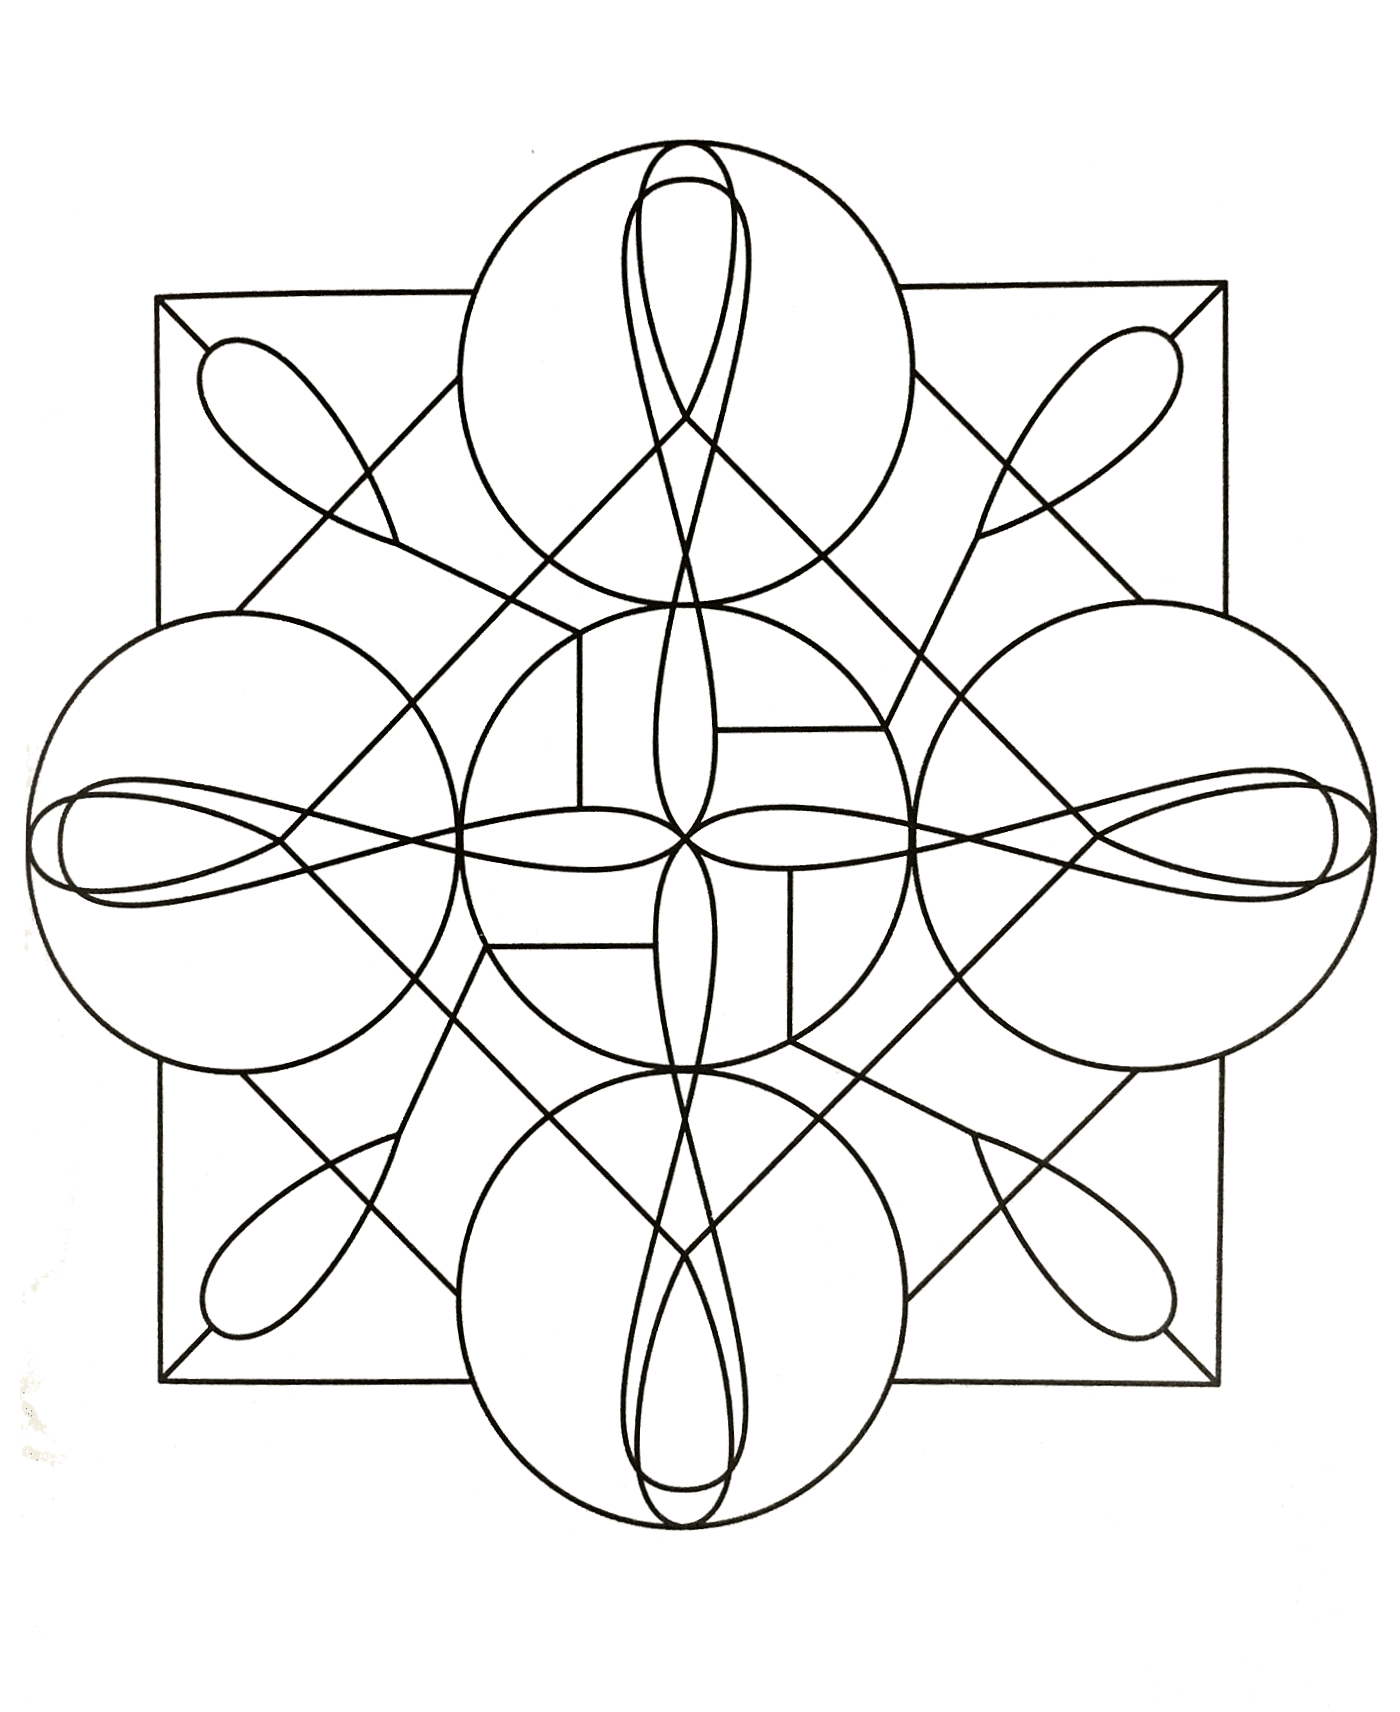 Coloriage de mandala assez graphique où figure des carrés ainsi que plusieurs formes ovales. Le niveau de ce mandala est normal.